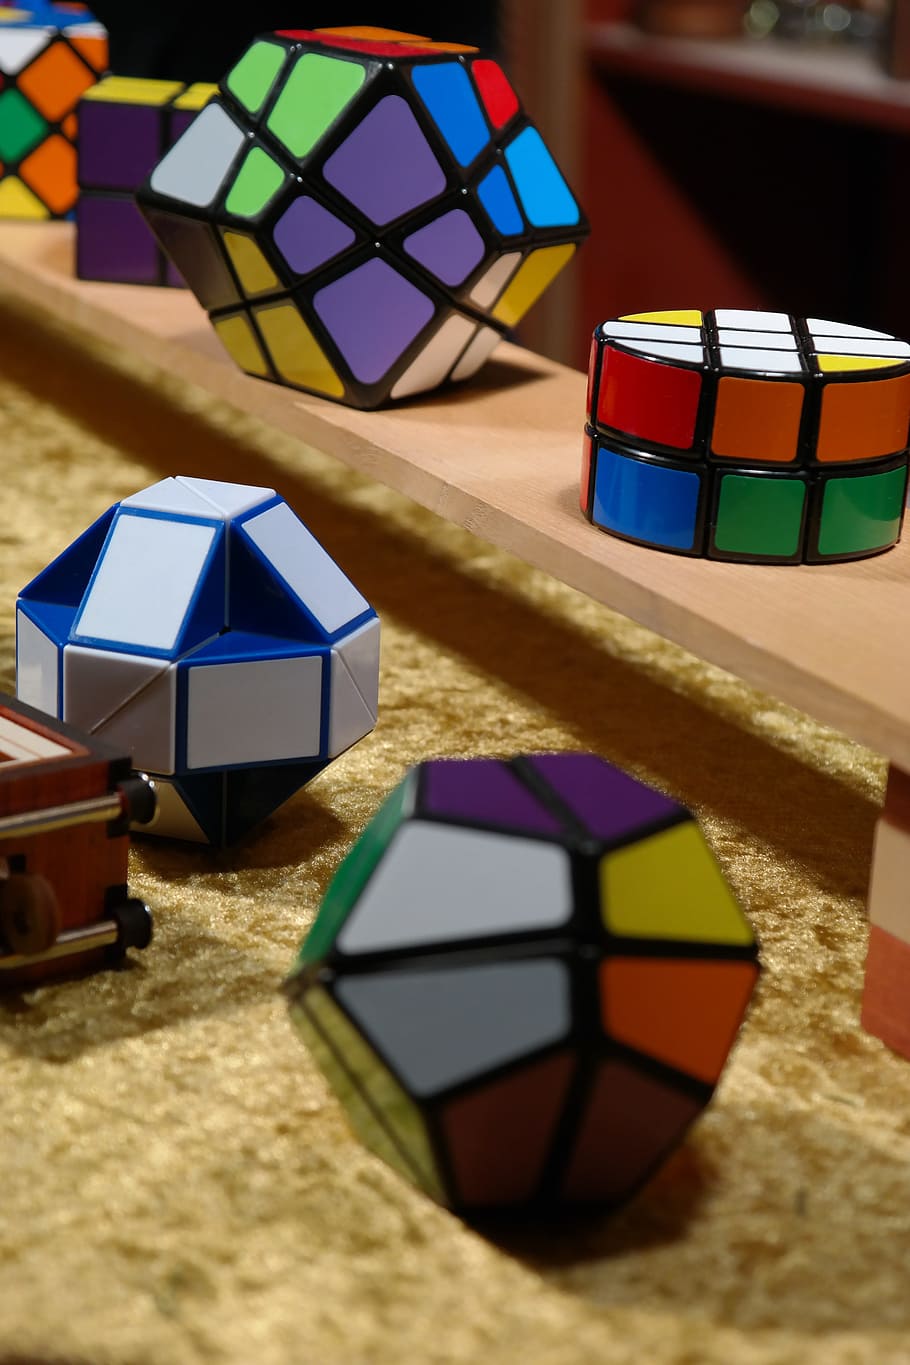 Magic Cube, Paciencia, Juegos, Rompecabezas, juegos de paciencia, complicado, juguetes, pieza de rompecabezas, jugar, metal